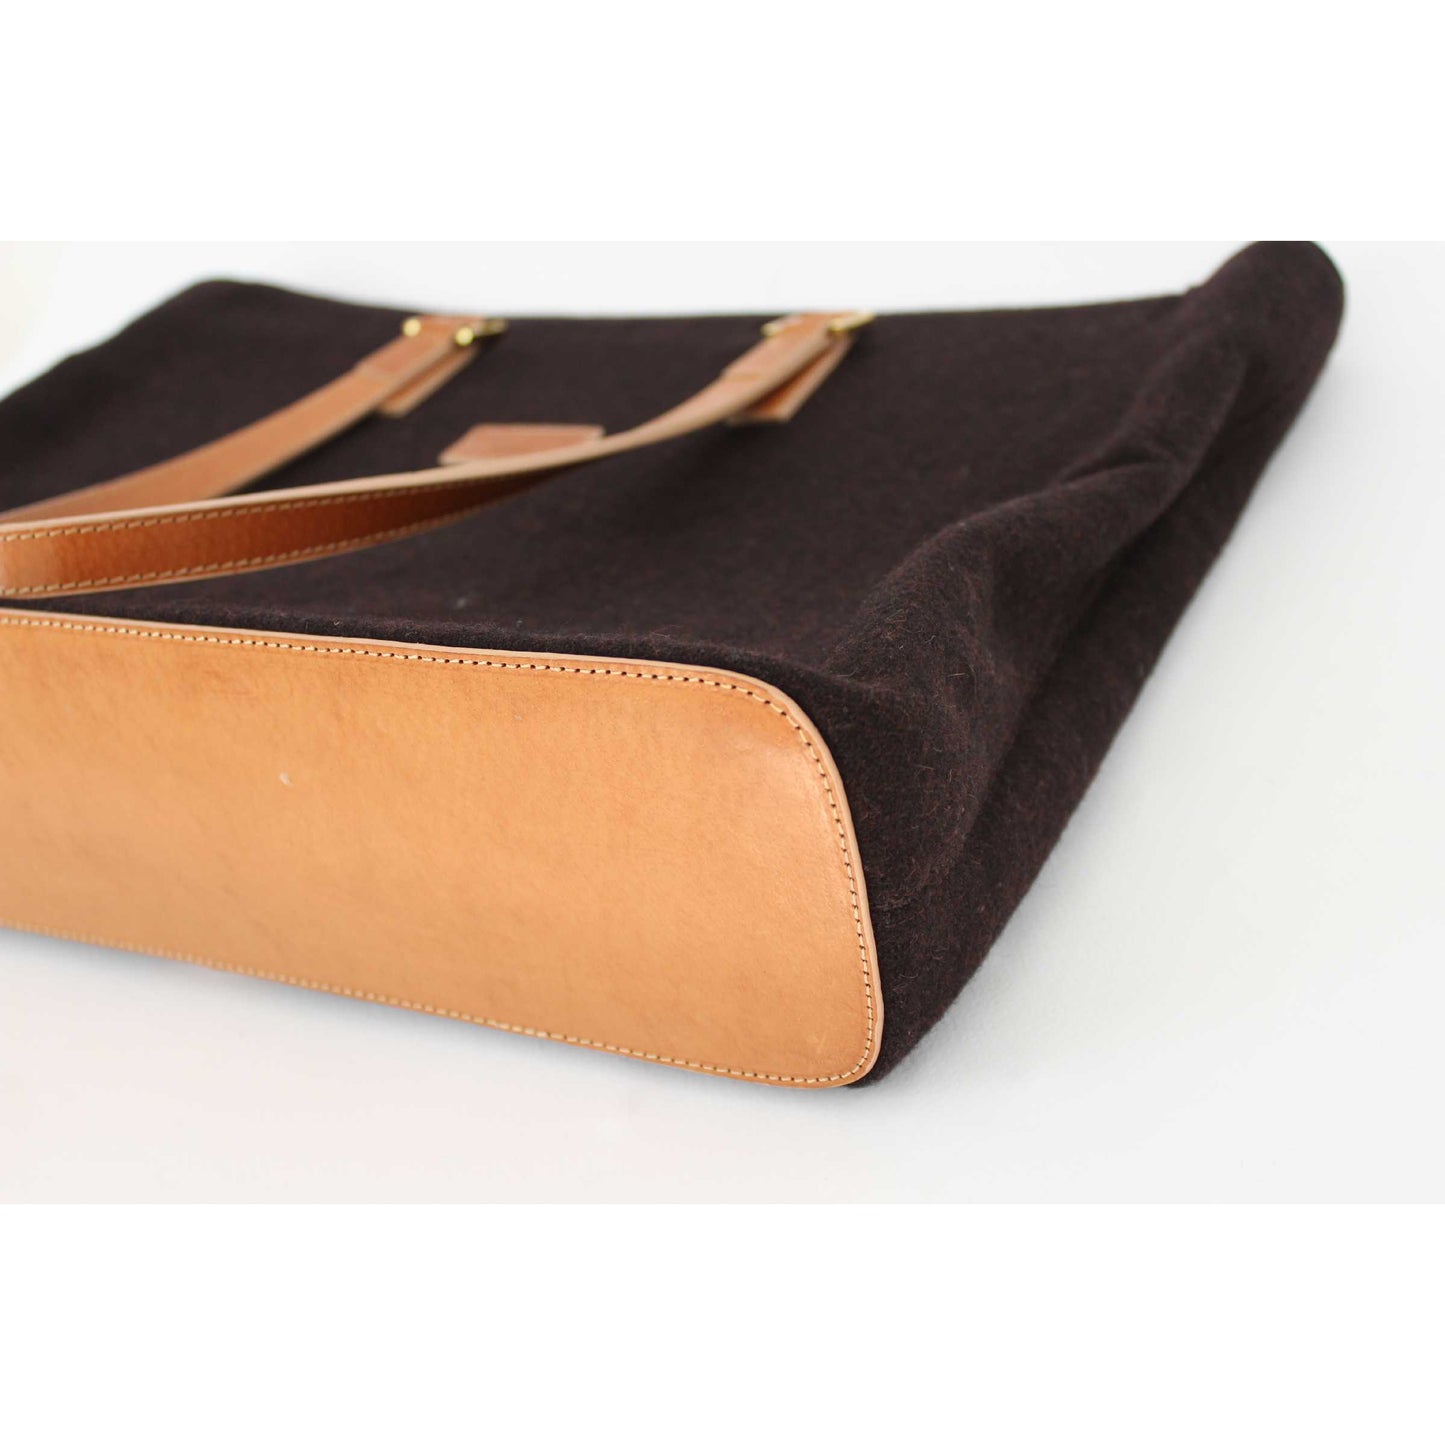 Pancaldi Vintage Leather Felt Brown Shoulder Tote Bag